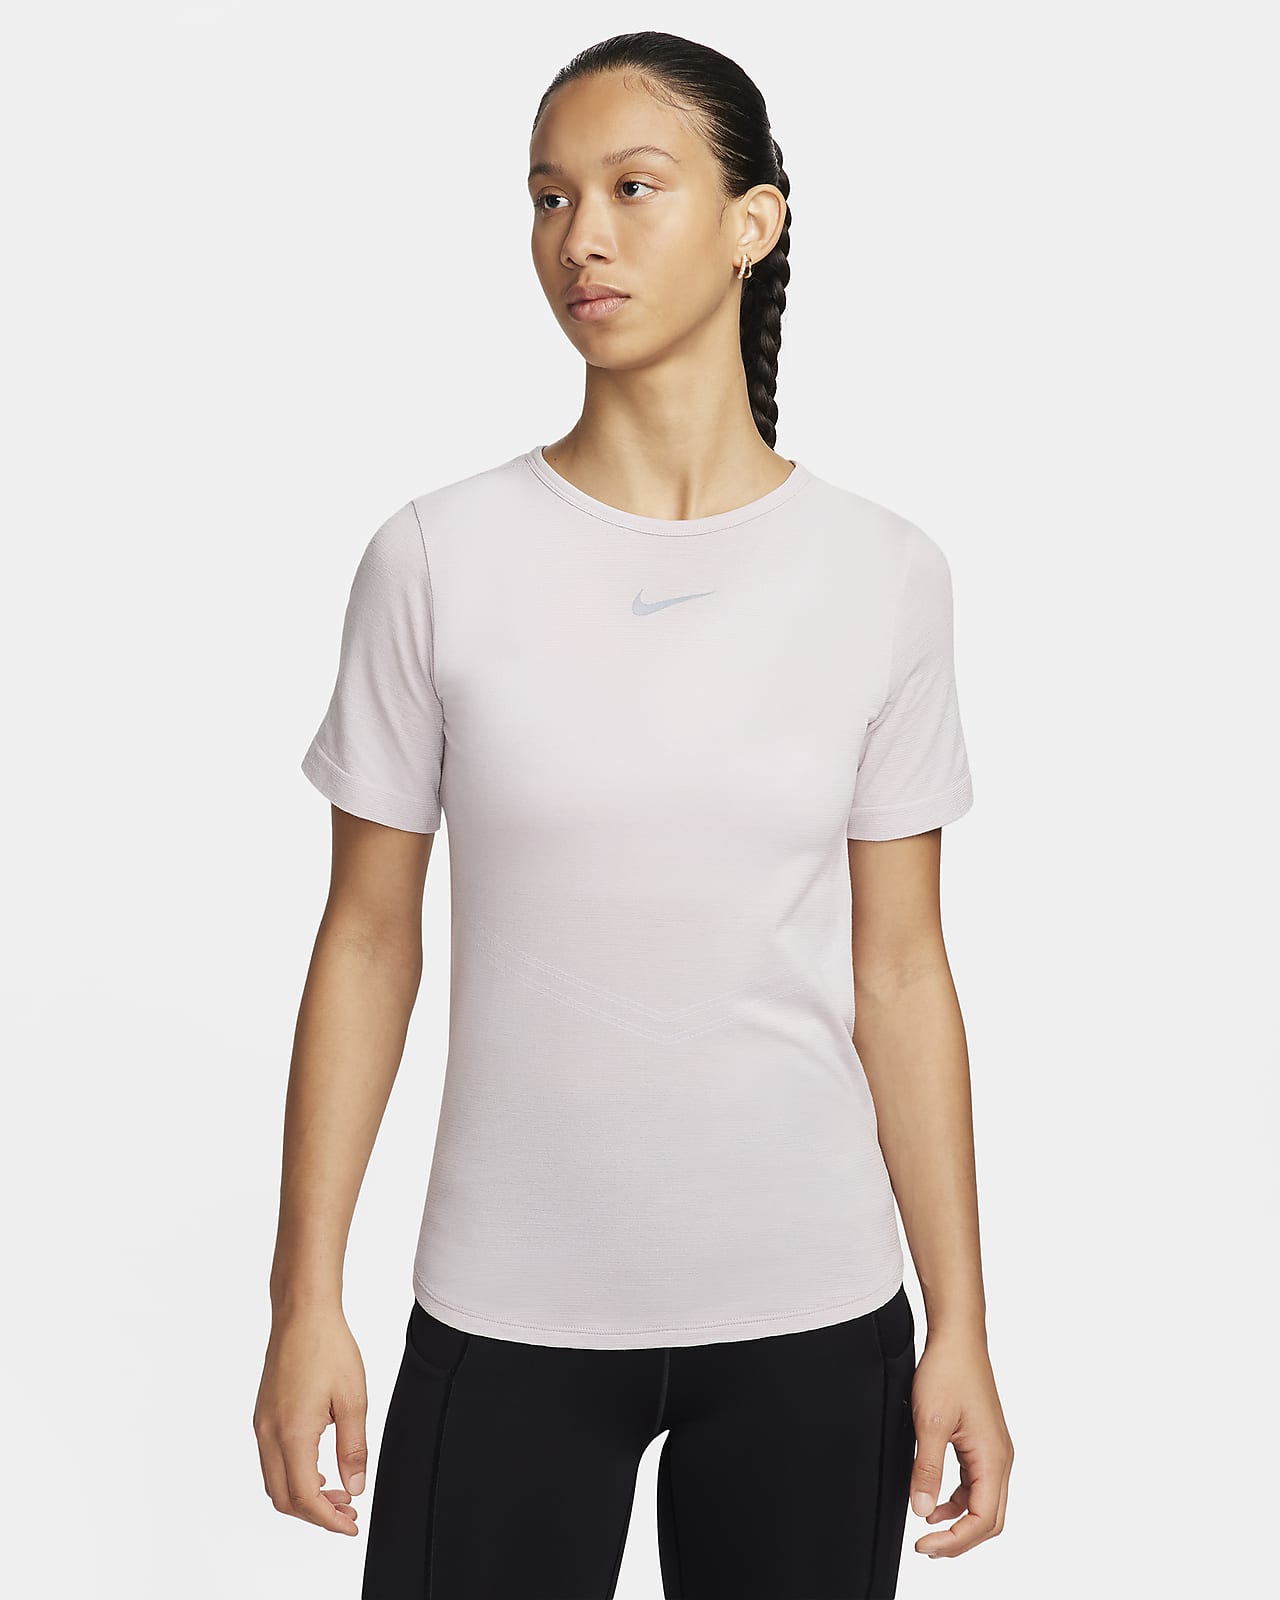 Damska koszulka z krótkim rękawem do biegania Dri-FIT Nike Swift Wool